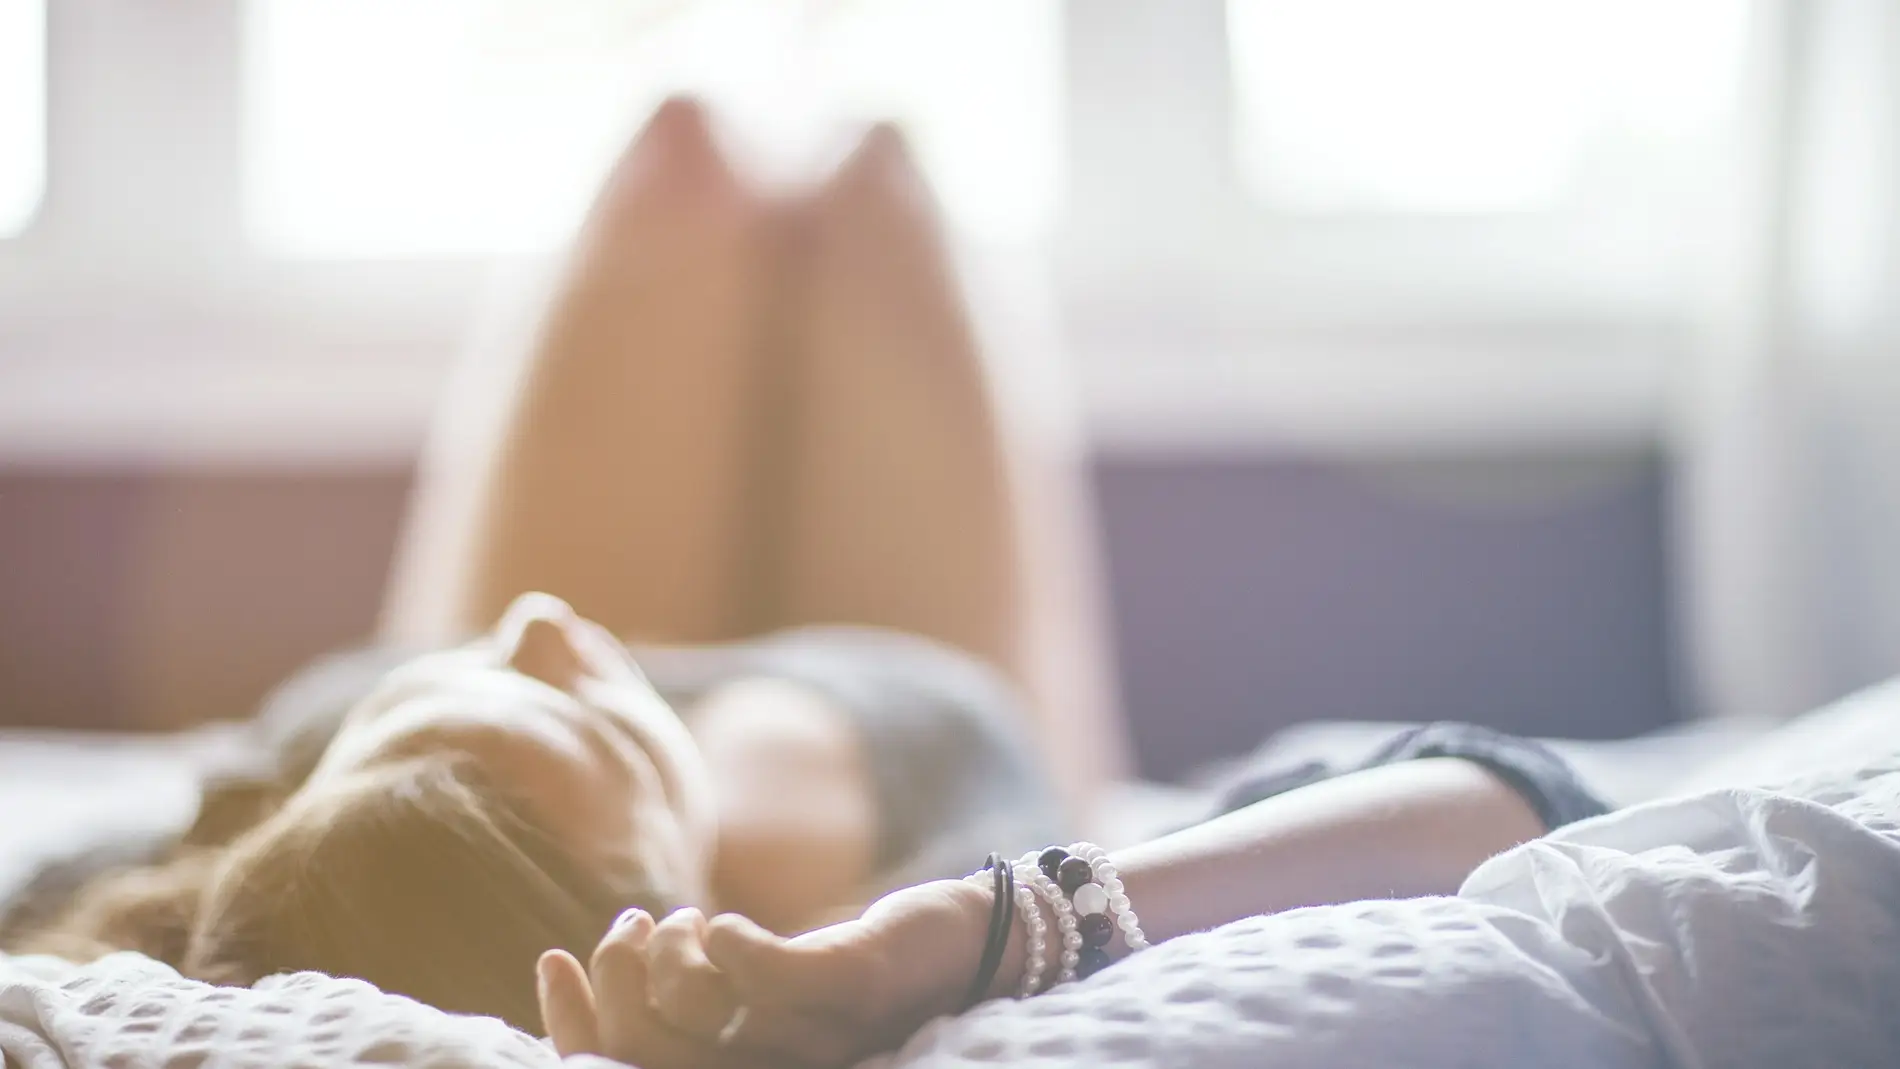 ¿Cuánto dura el orgasmo perfecto? Las grandes diferencias entre los hombres y las mujeres